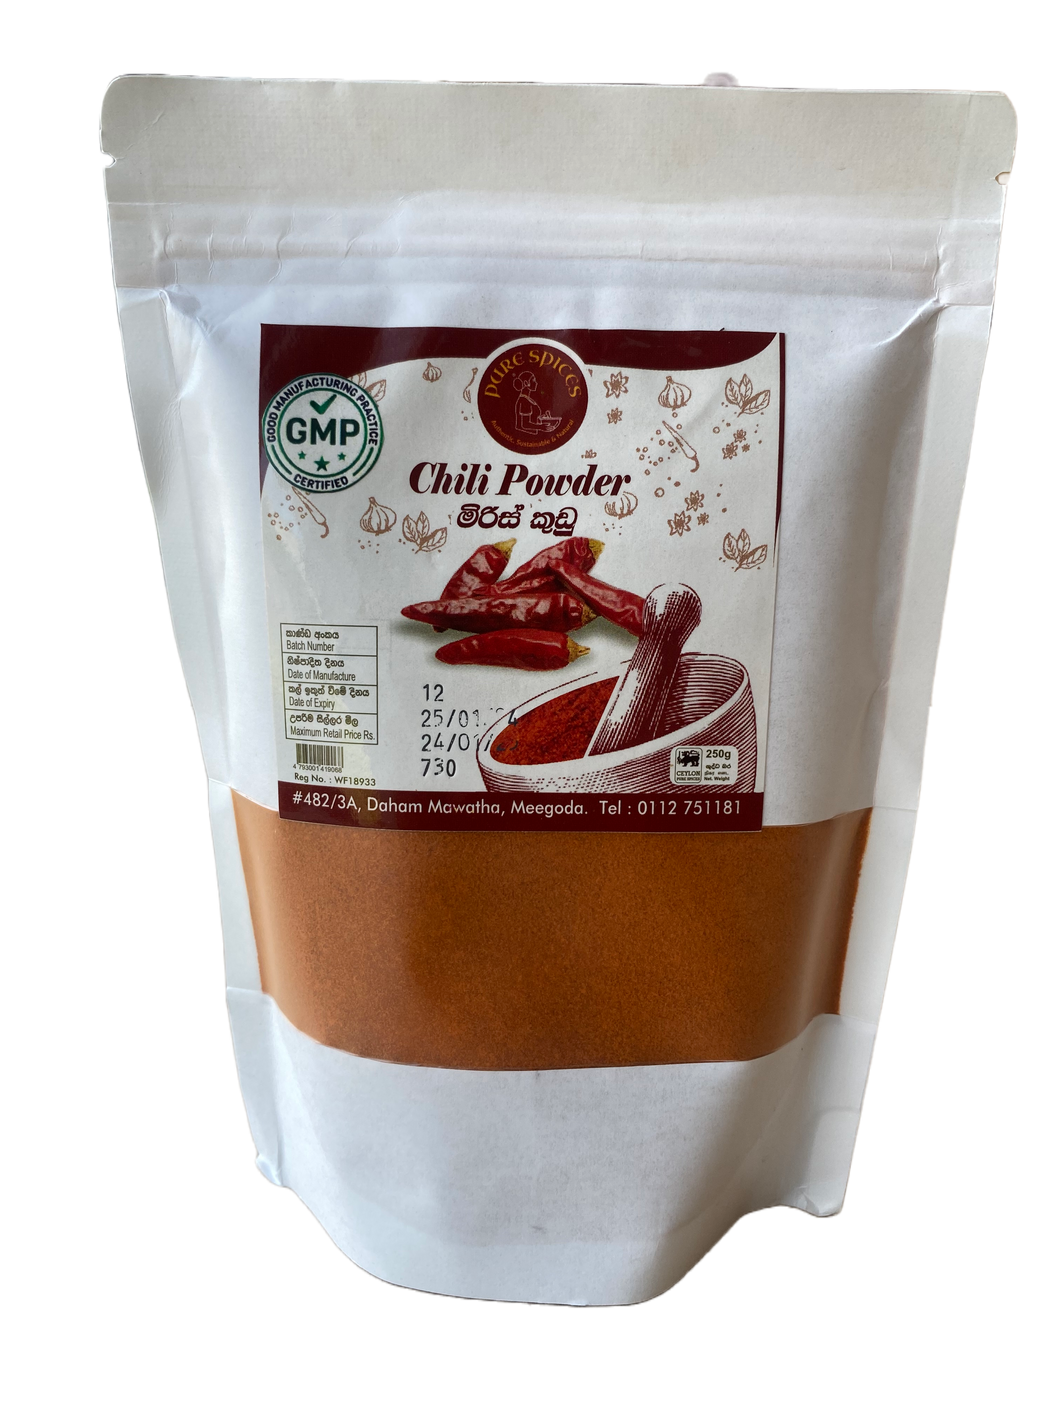 Chili Powder 250g (GMP Certified)- Pure Spices